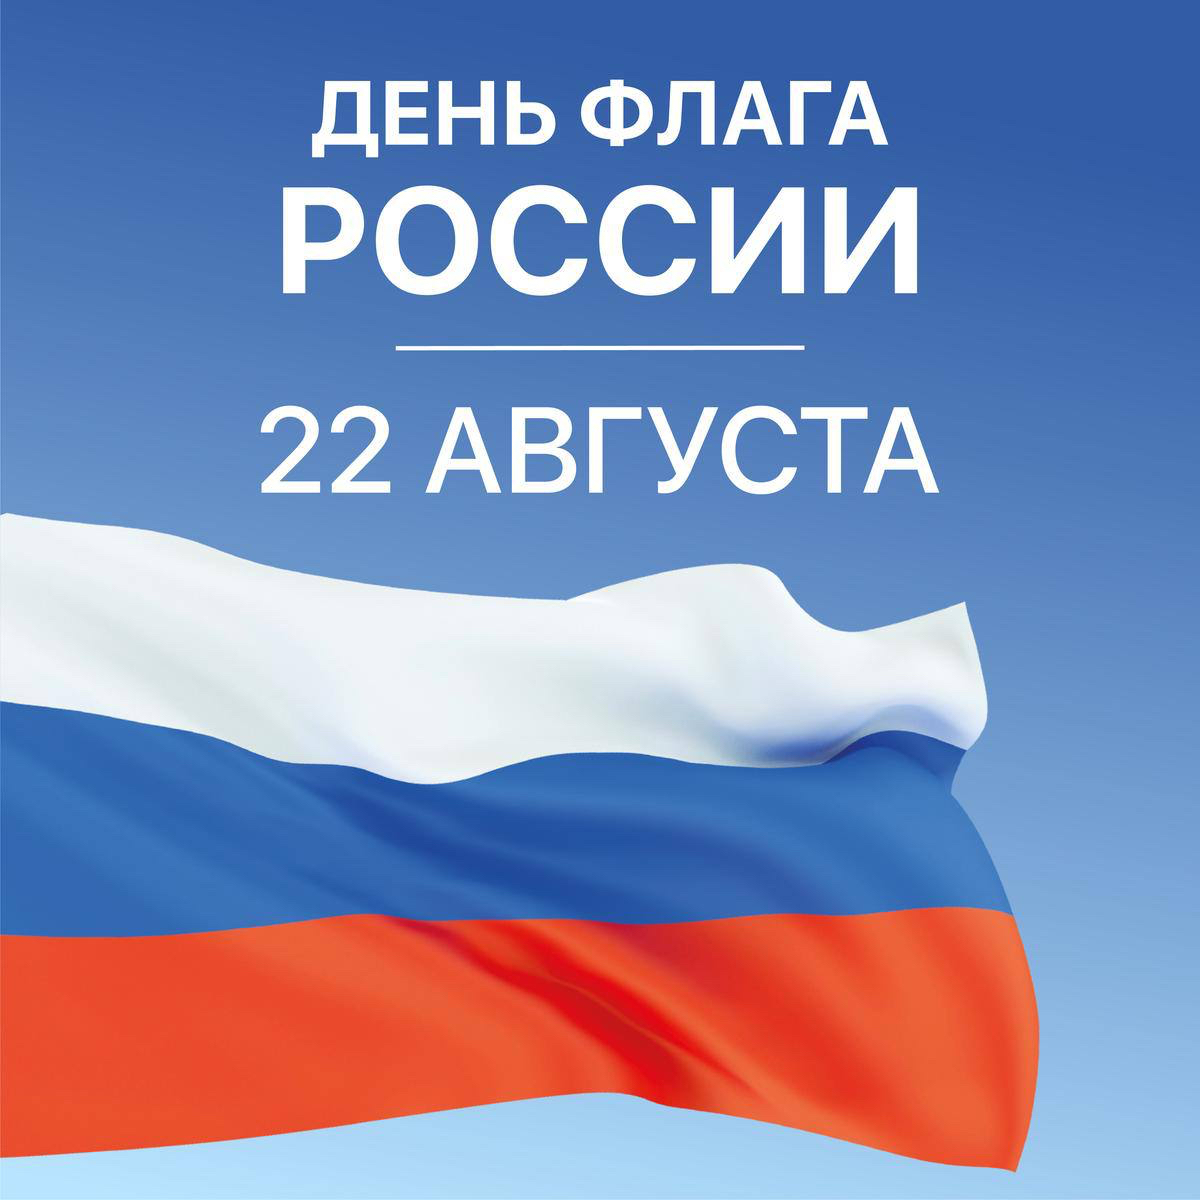 22 августа день государственного флага. День флага. Флаг России. Поздравление с днем российского флага. 22 Августа день российского флага.